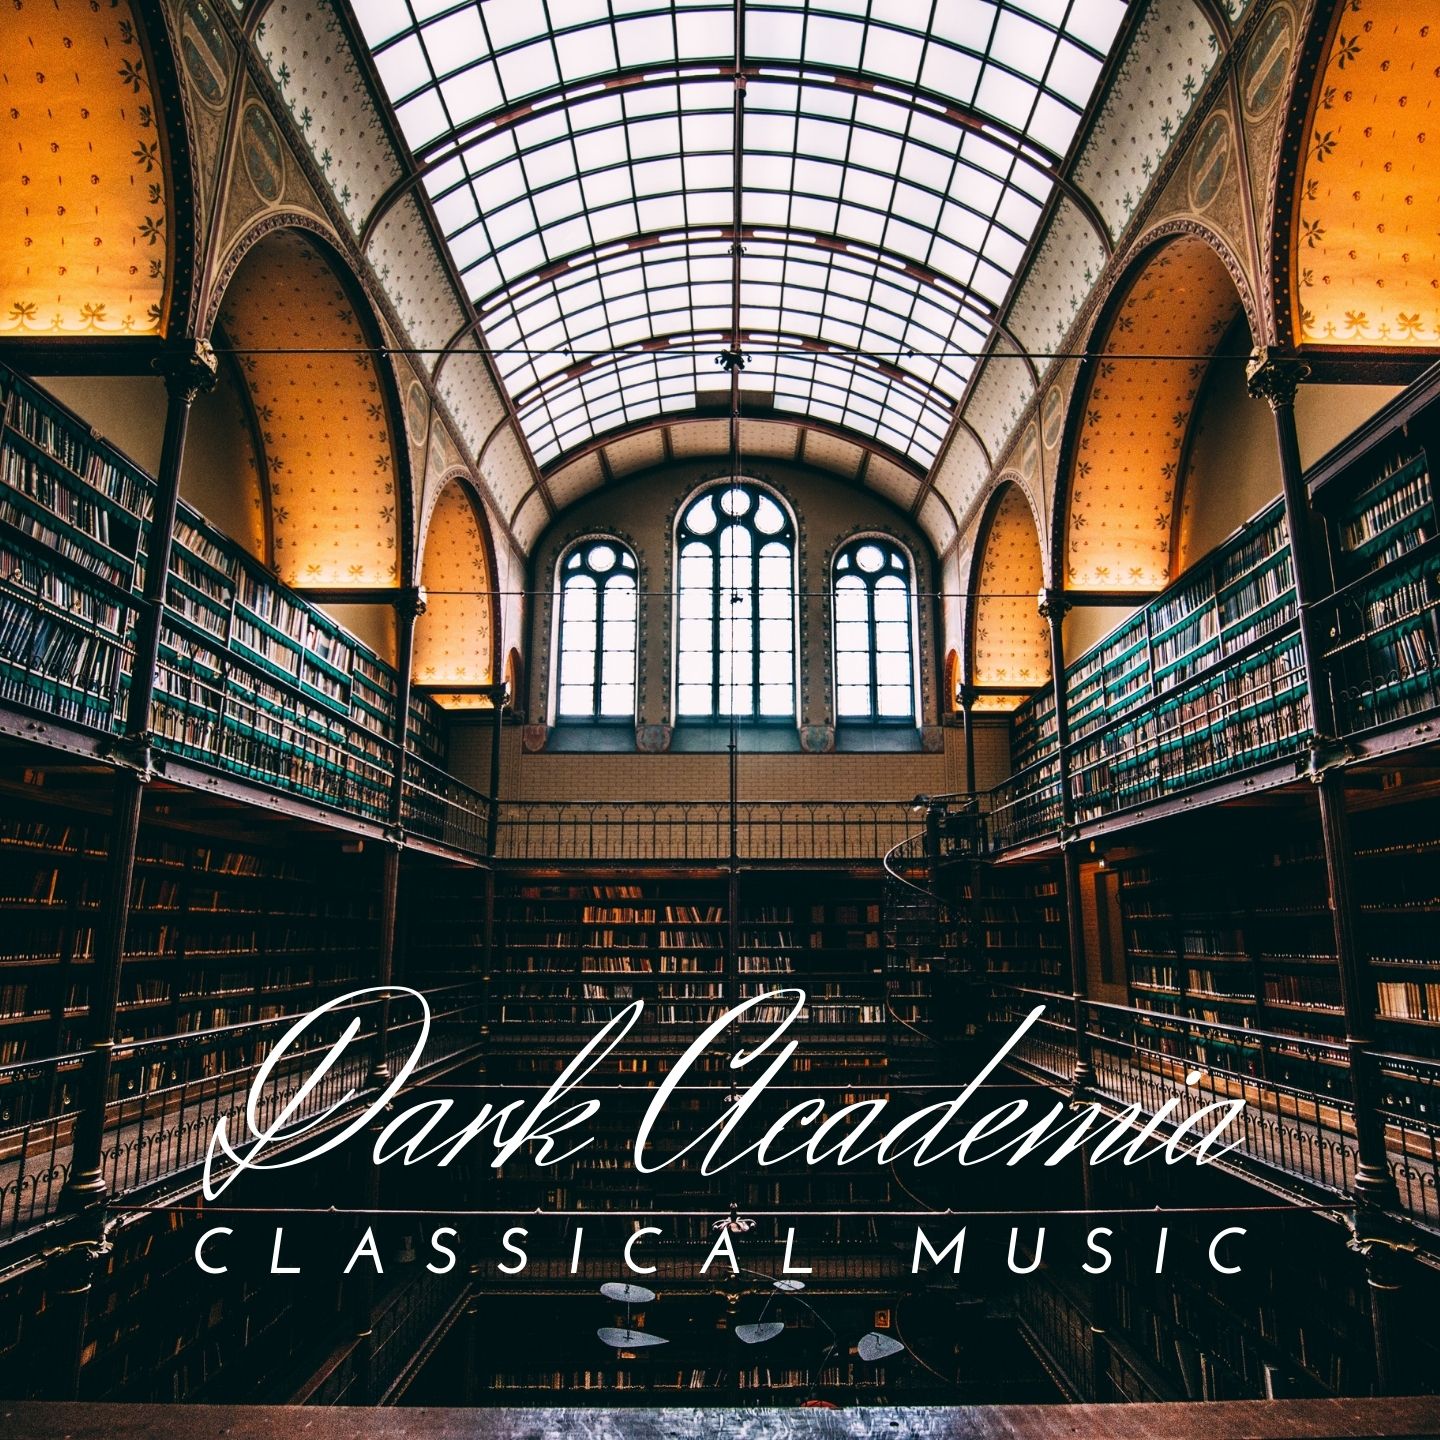 Dark Academia Classical Music